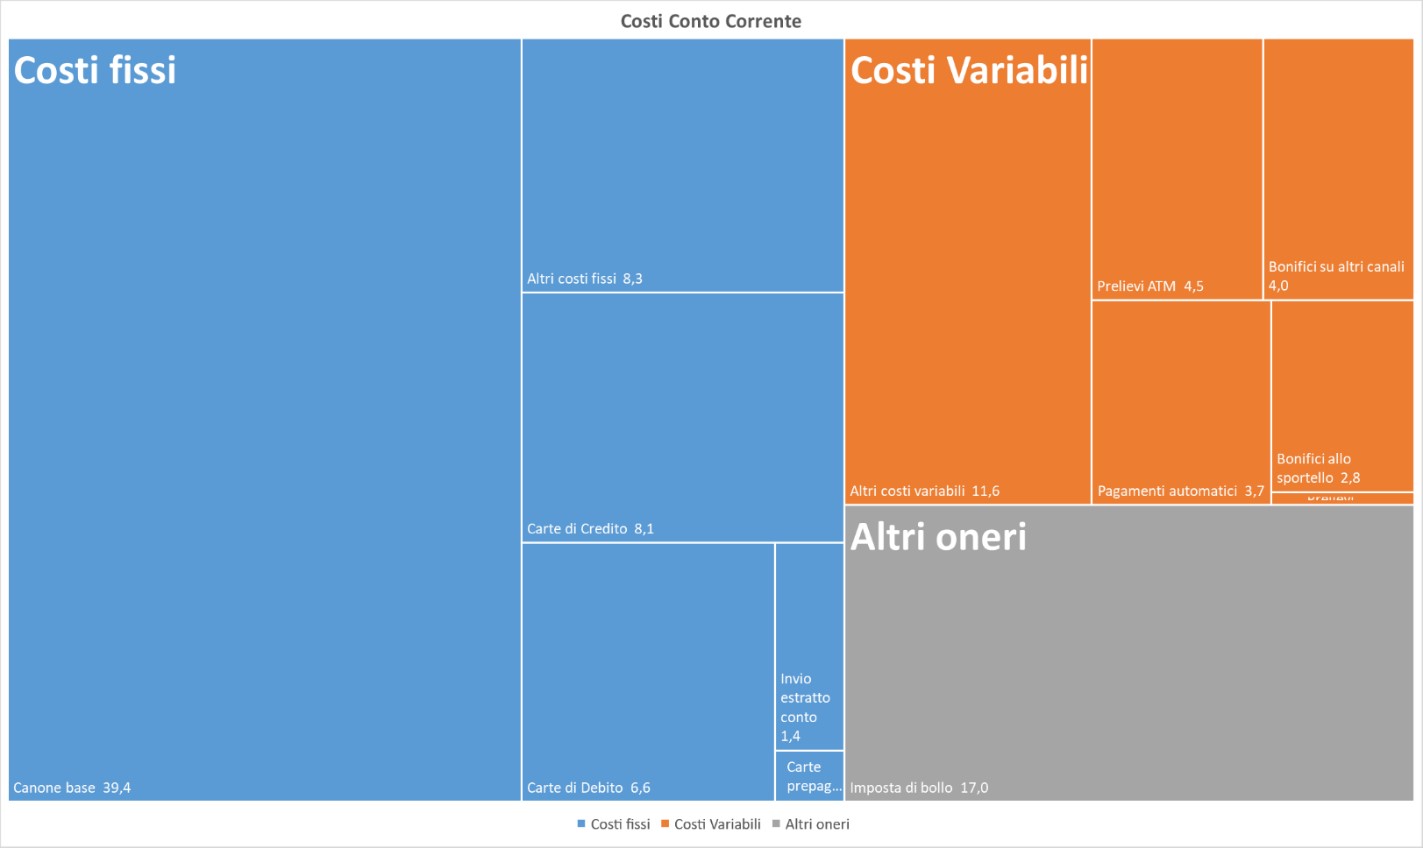 Figura 1: dettaglio dei costi medi di gestione del conto corrente suddivisi per tipologia (costi fissi, costi variabili, altri oneri).